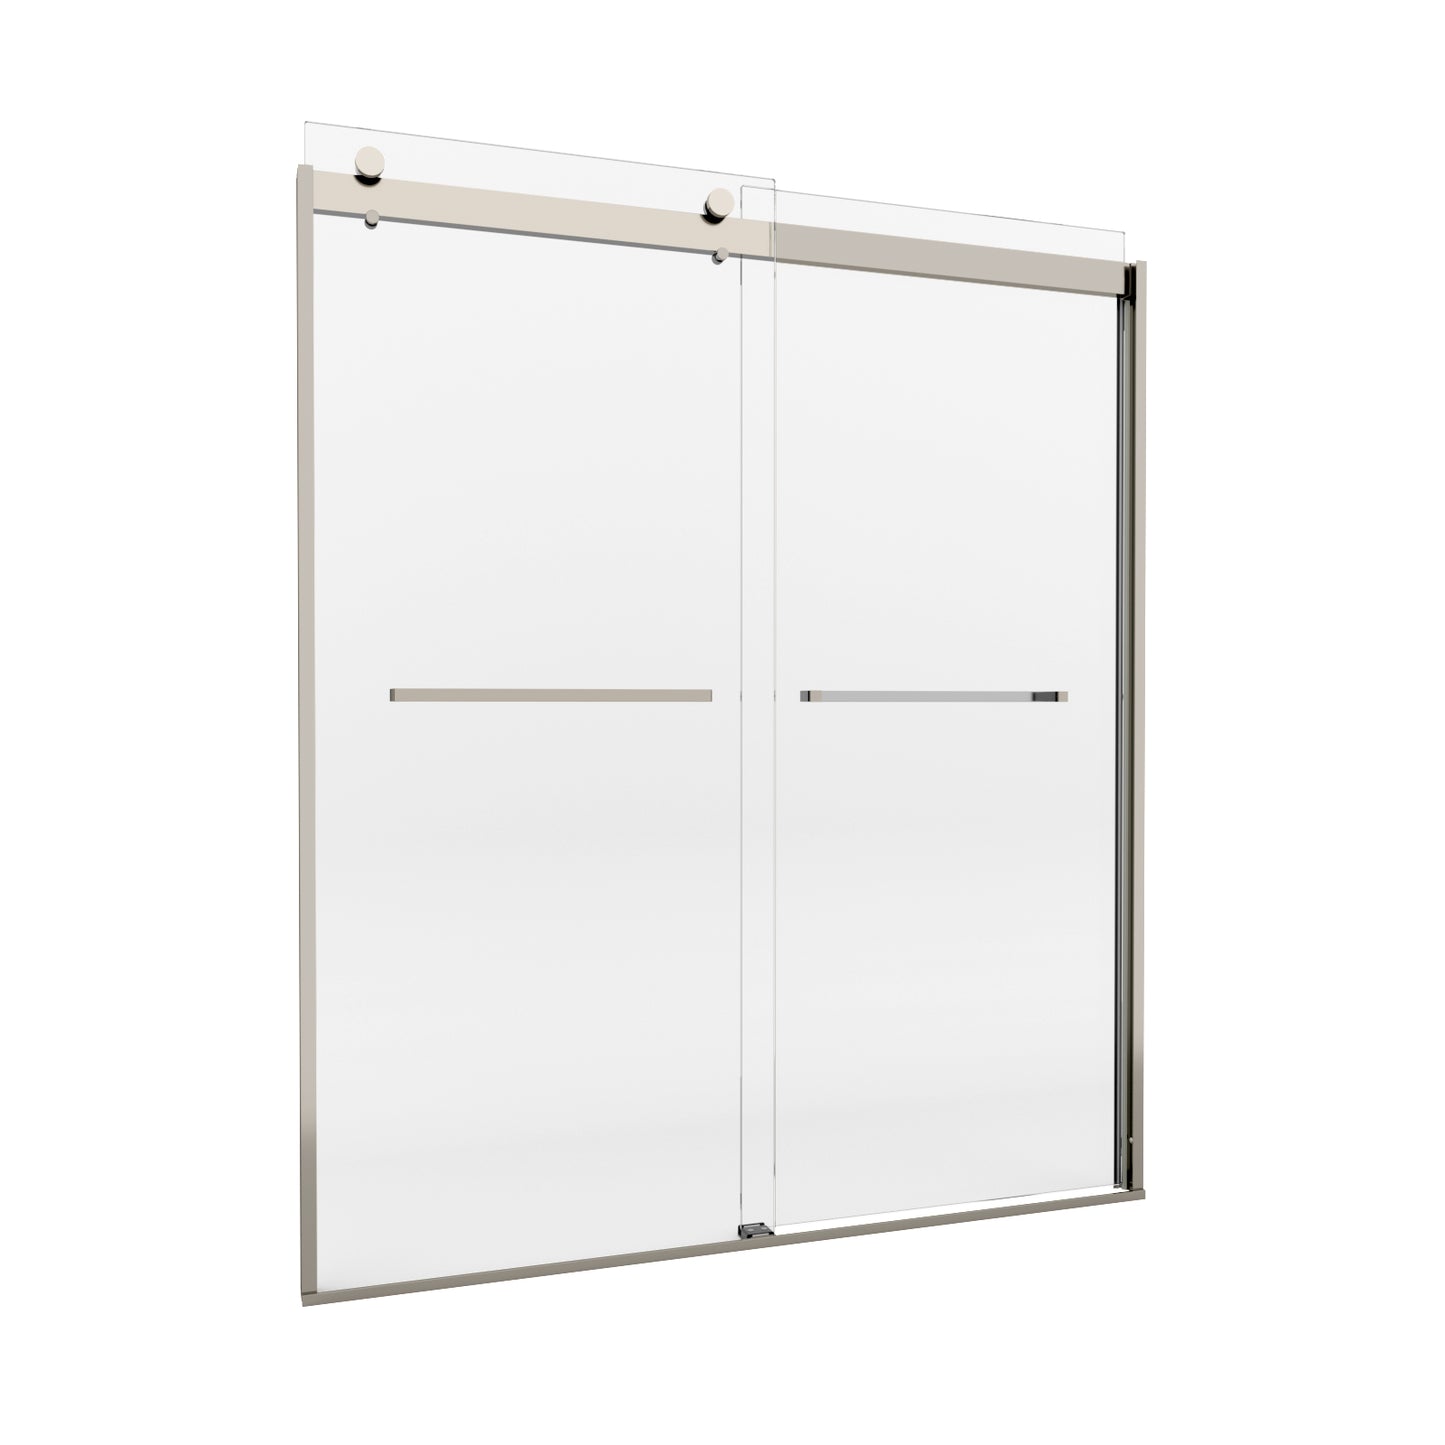 semi-frameless glass sliding shower doors color:chrome